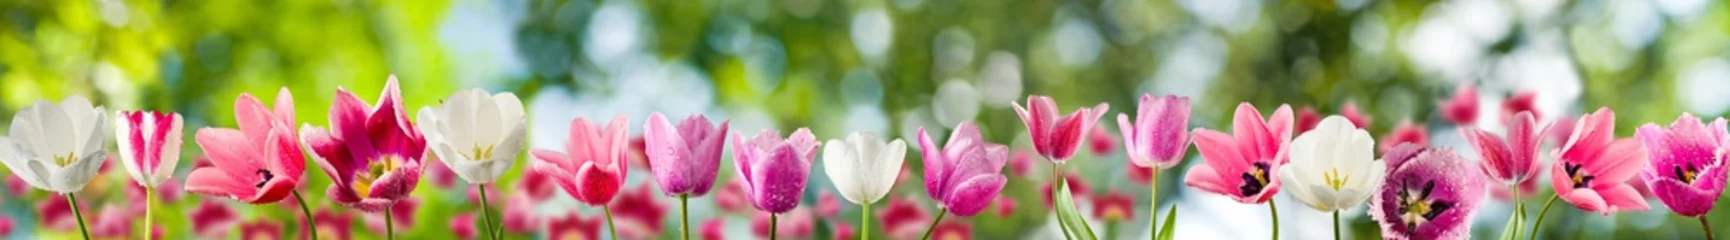 Poster de jardin Tulipe Image of tulips closeup